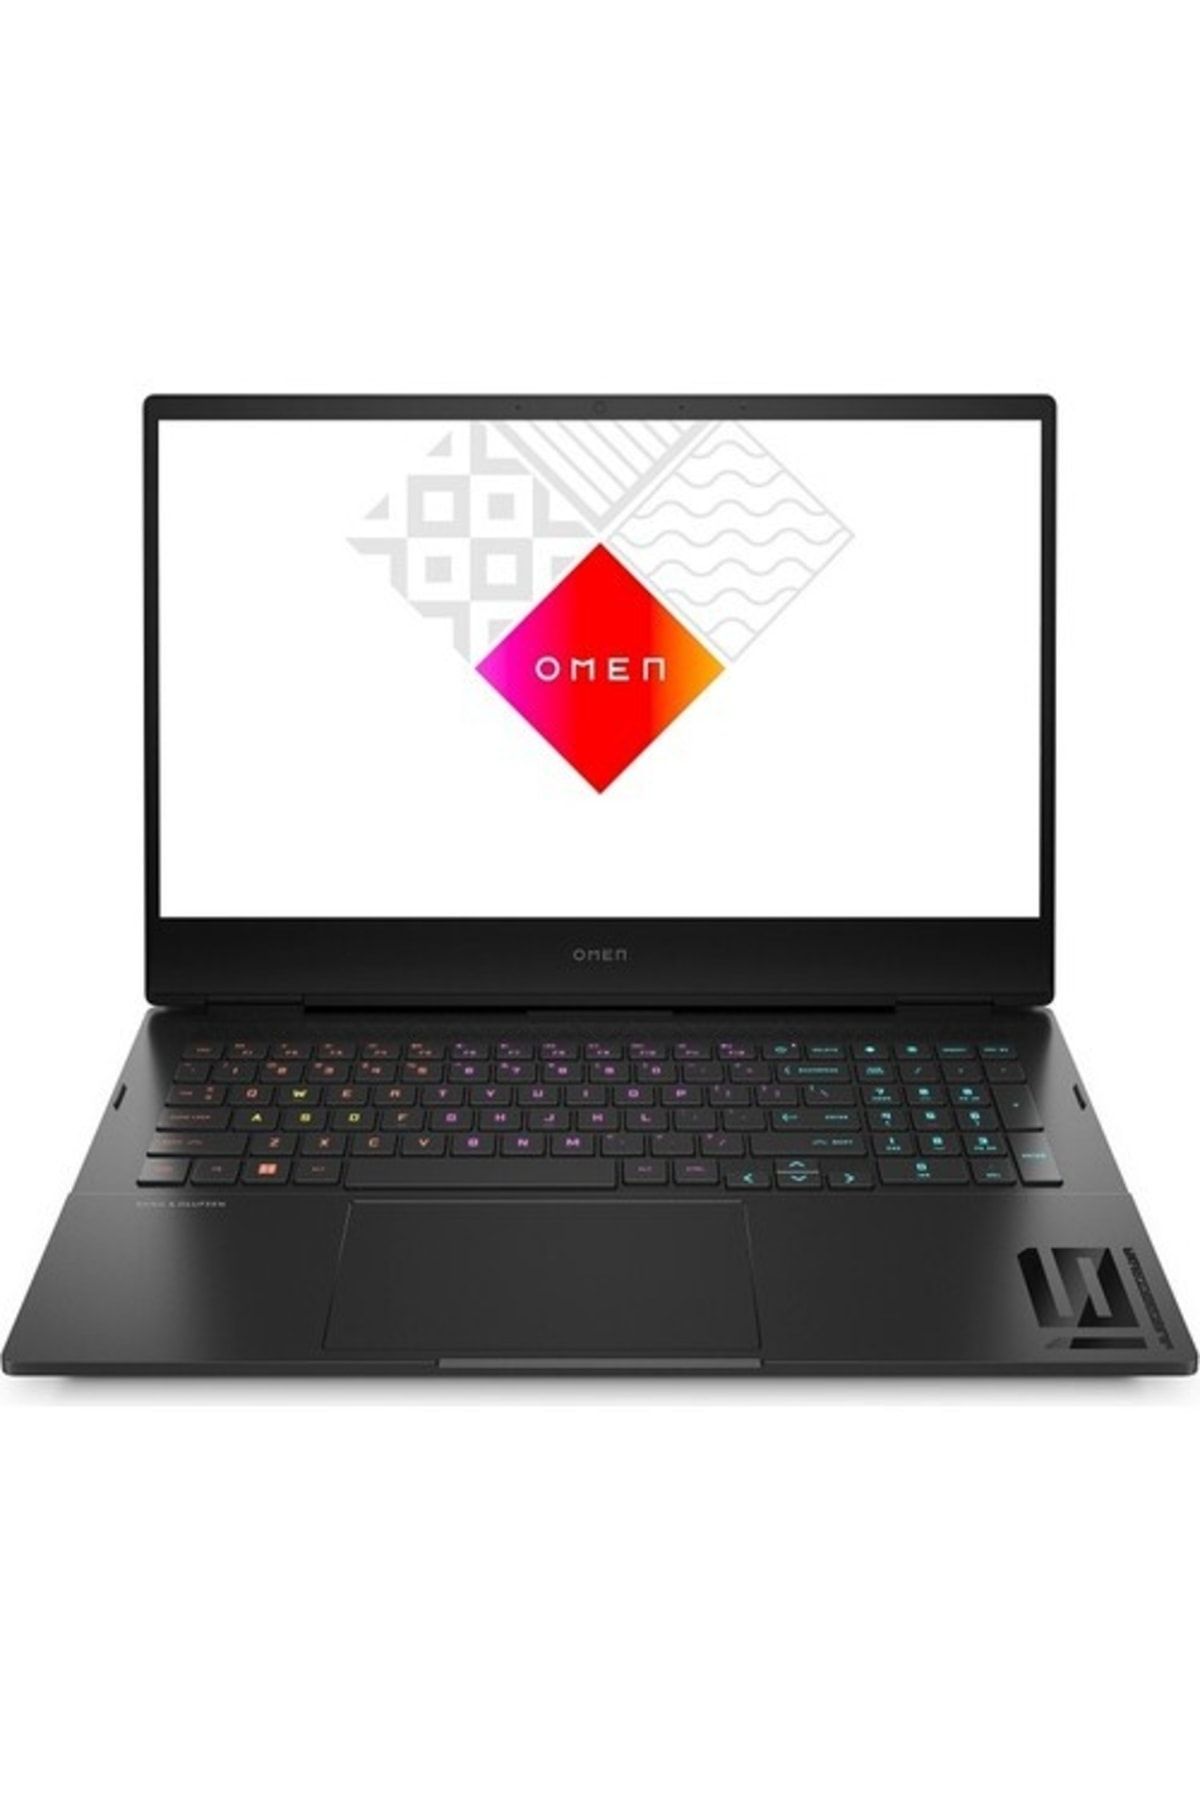 HP Omen Gaming Laptop 16-k0010nt I7-12700h 16gb 1tb 6gb Rtx3060 16.1 144hz Freedos